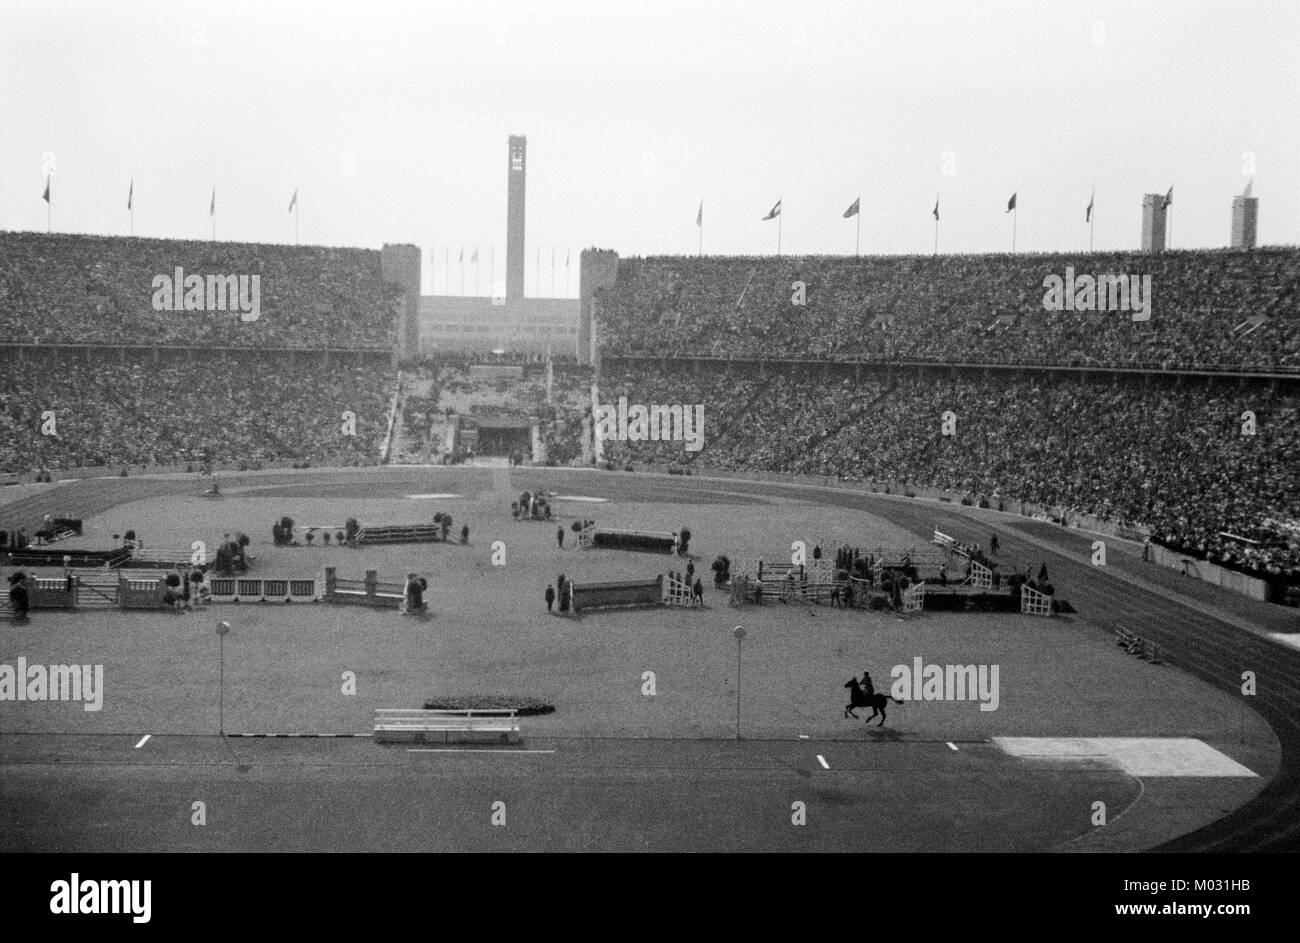 Le stade olympique de Berlin l'accueil des Jeux Olympiques d'été de 1936. Un événement équestre en cours.de surpasser les jeux de Los Angeles de 1932, Adolf Hitler avait construit un nouveau 100 000 places du stade d'athlétisme, 6 gymnases, et de nombreuses autres petites arènes. Les jeux ont été les premiers à être télévisés, émissions de radio et atteint 41 pays. Banque D'Images